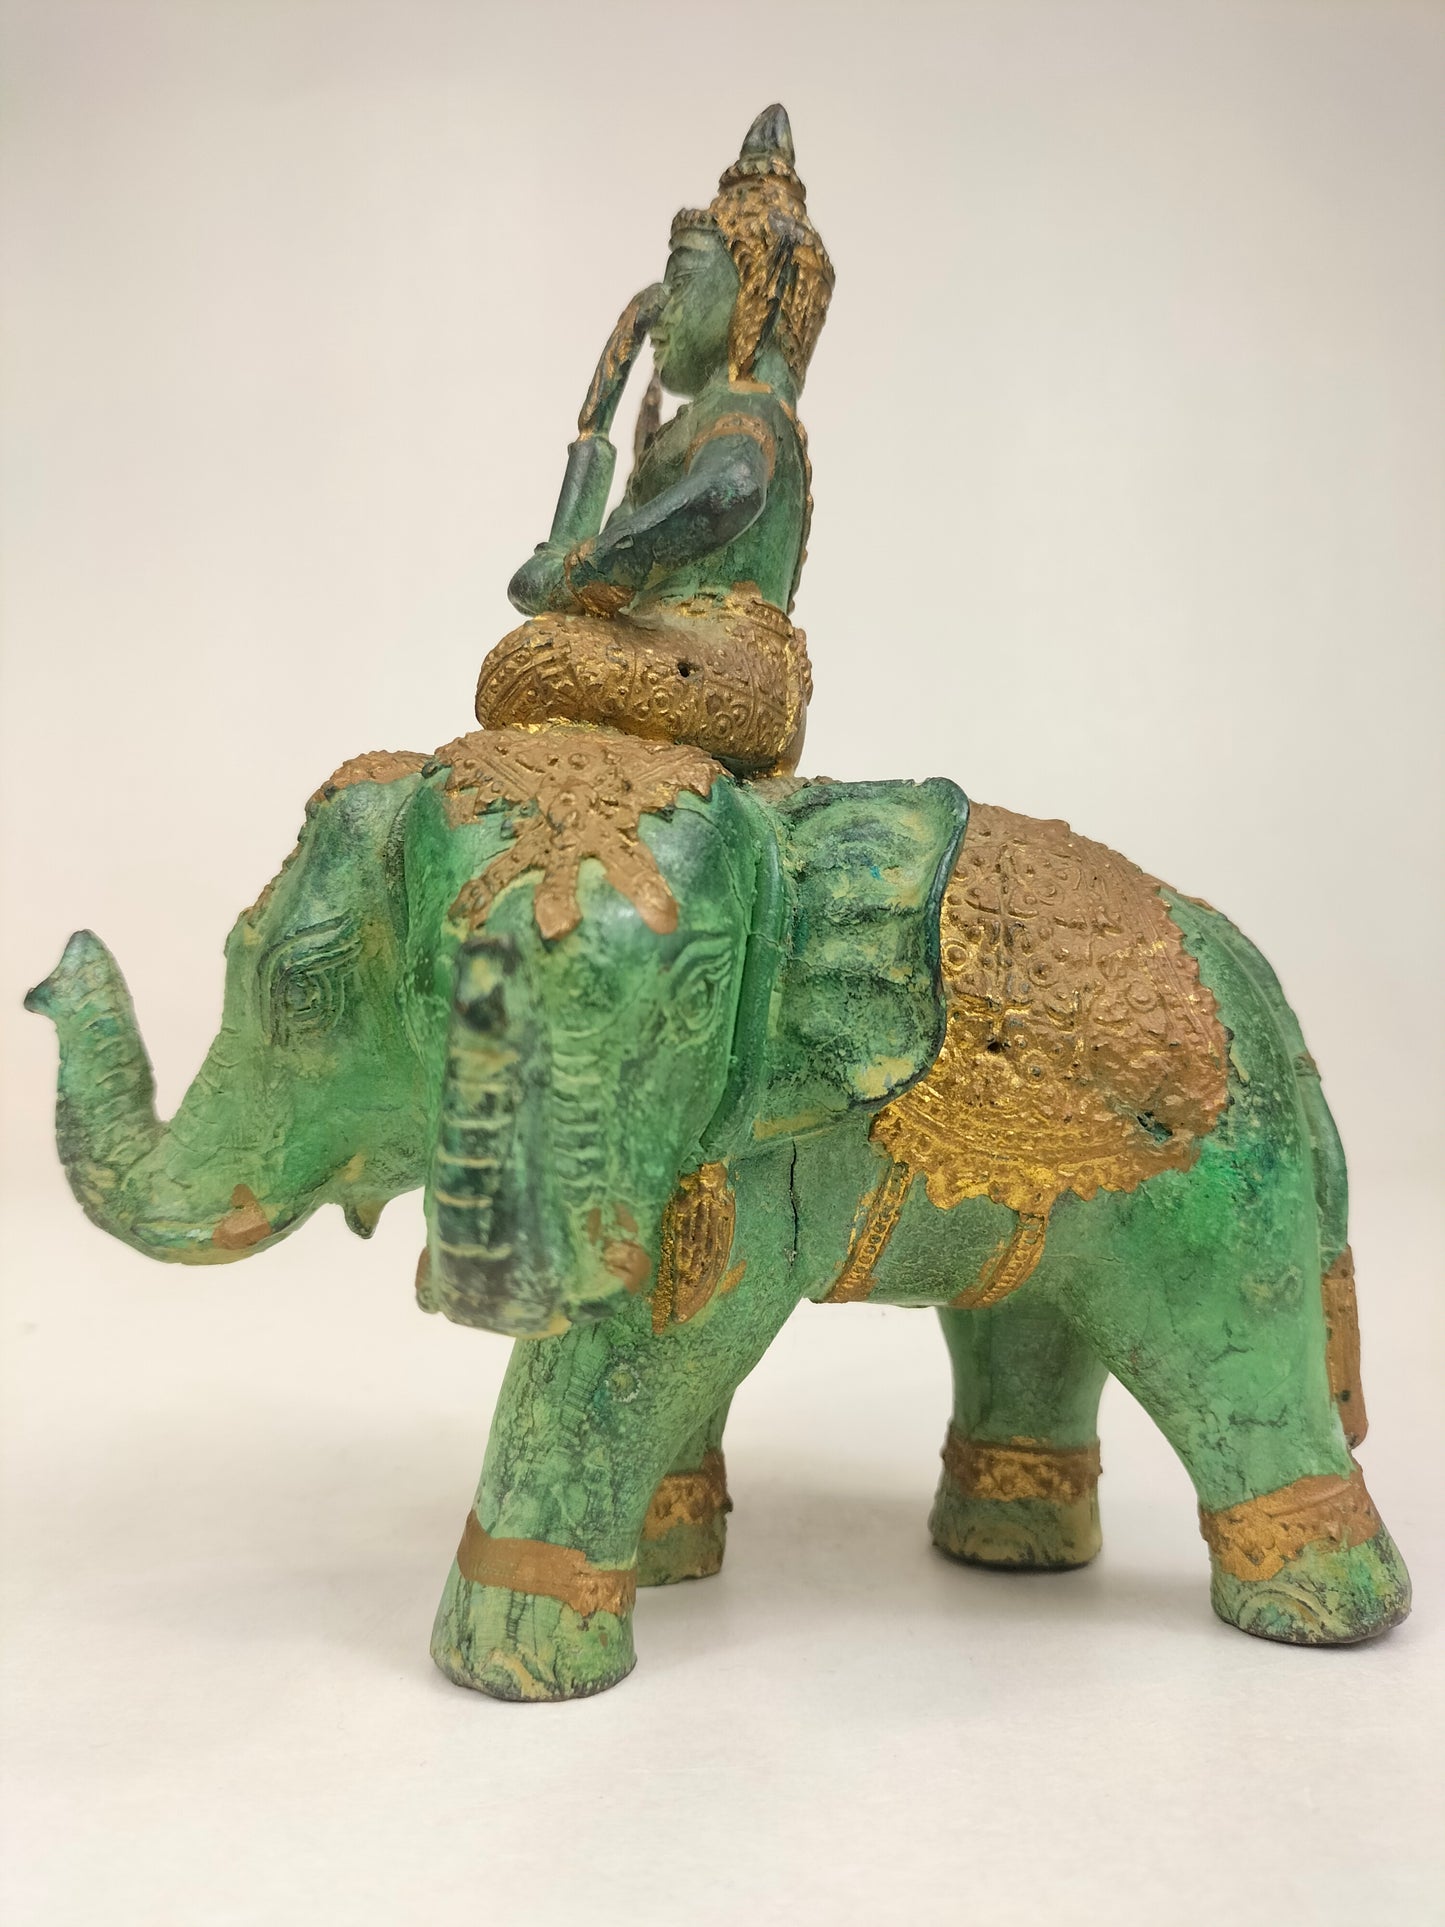 Tượng thần hộ mệnh cưỡi voi bằng đồng mạ vàng // Thái Lan - thế kỷ 20